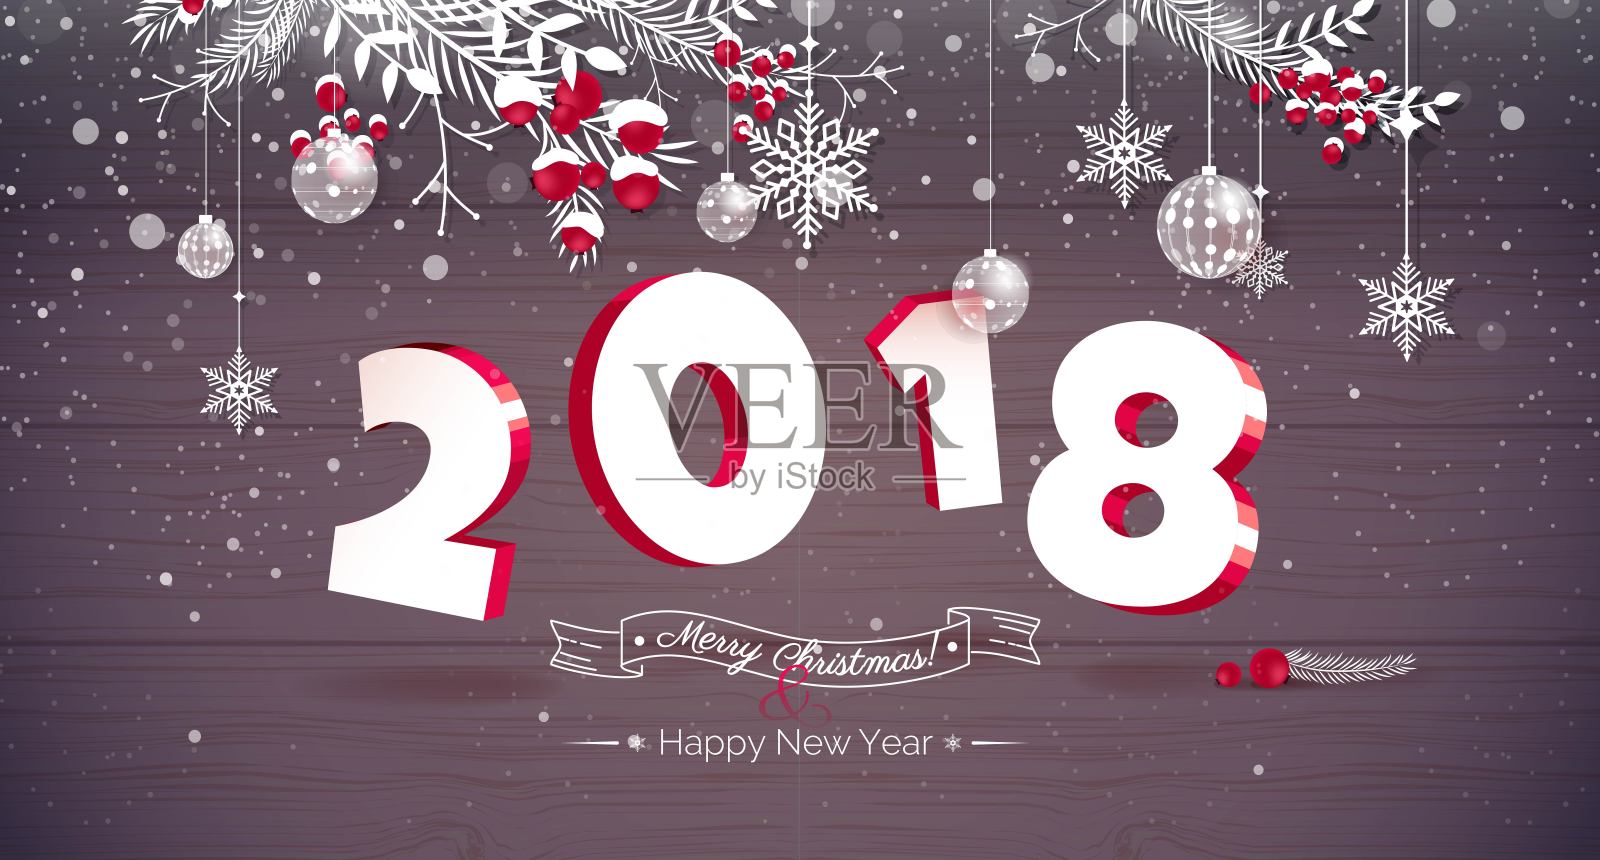 2018文字设计新年快乐。设计模板素材